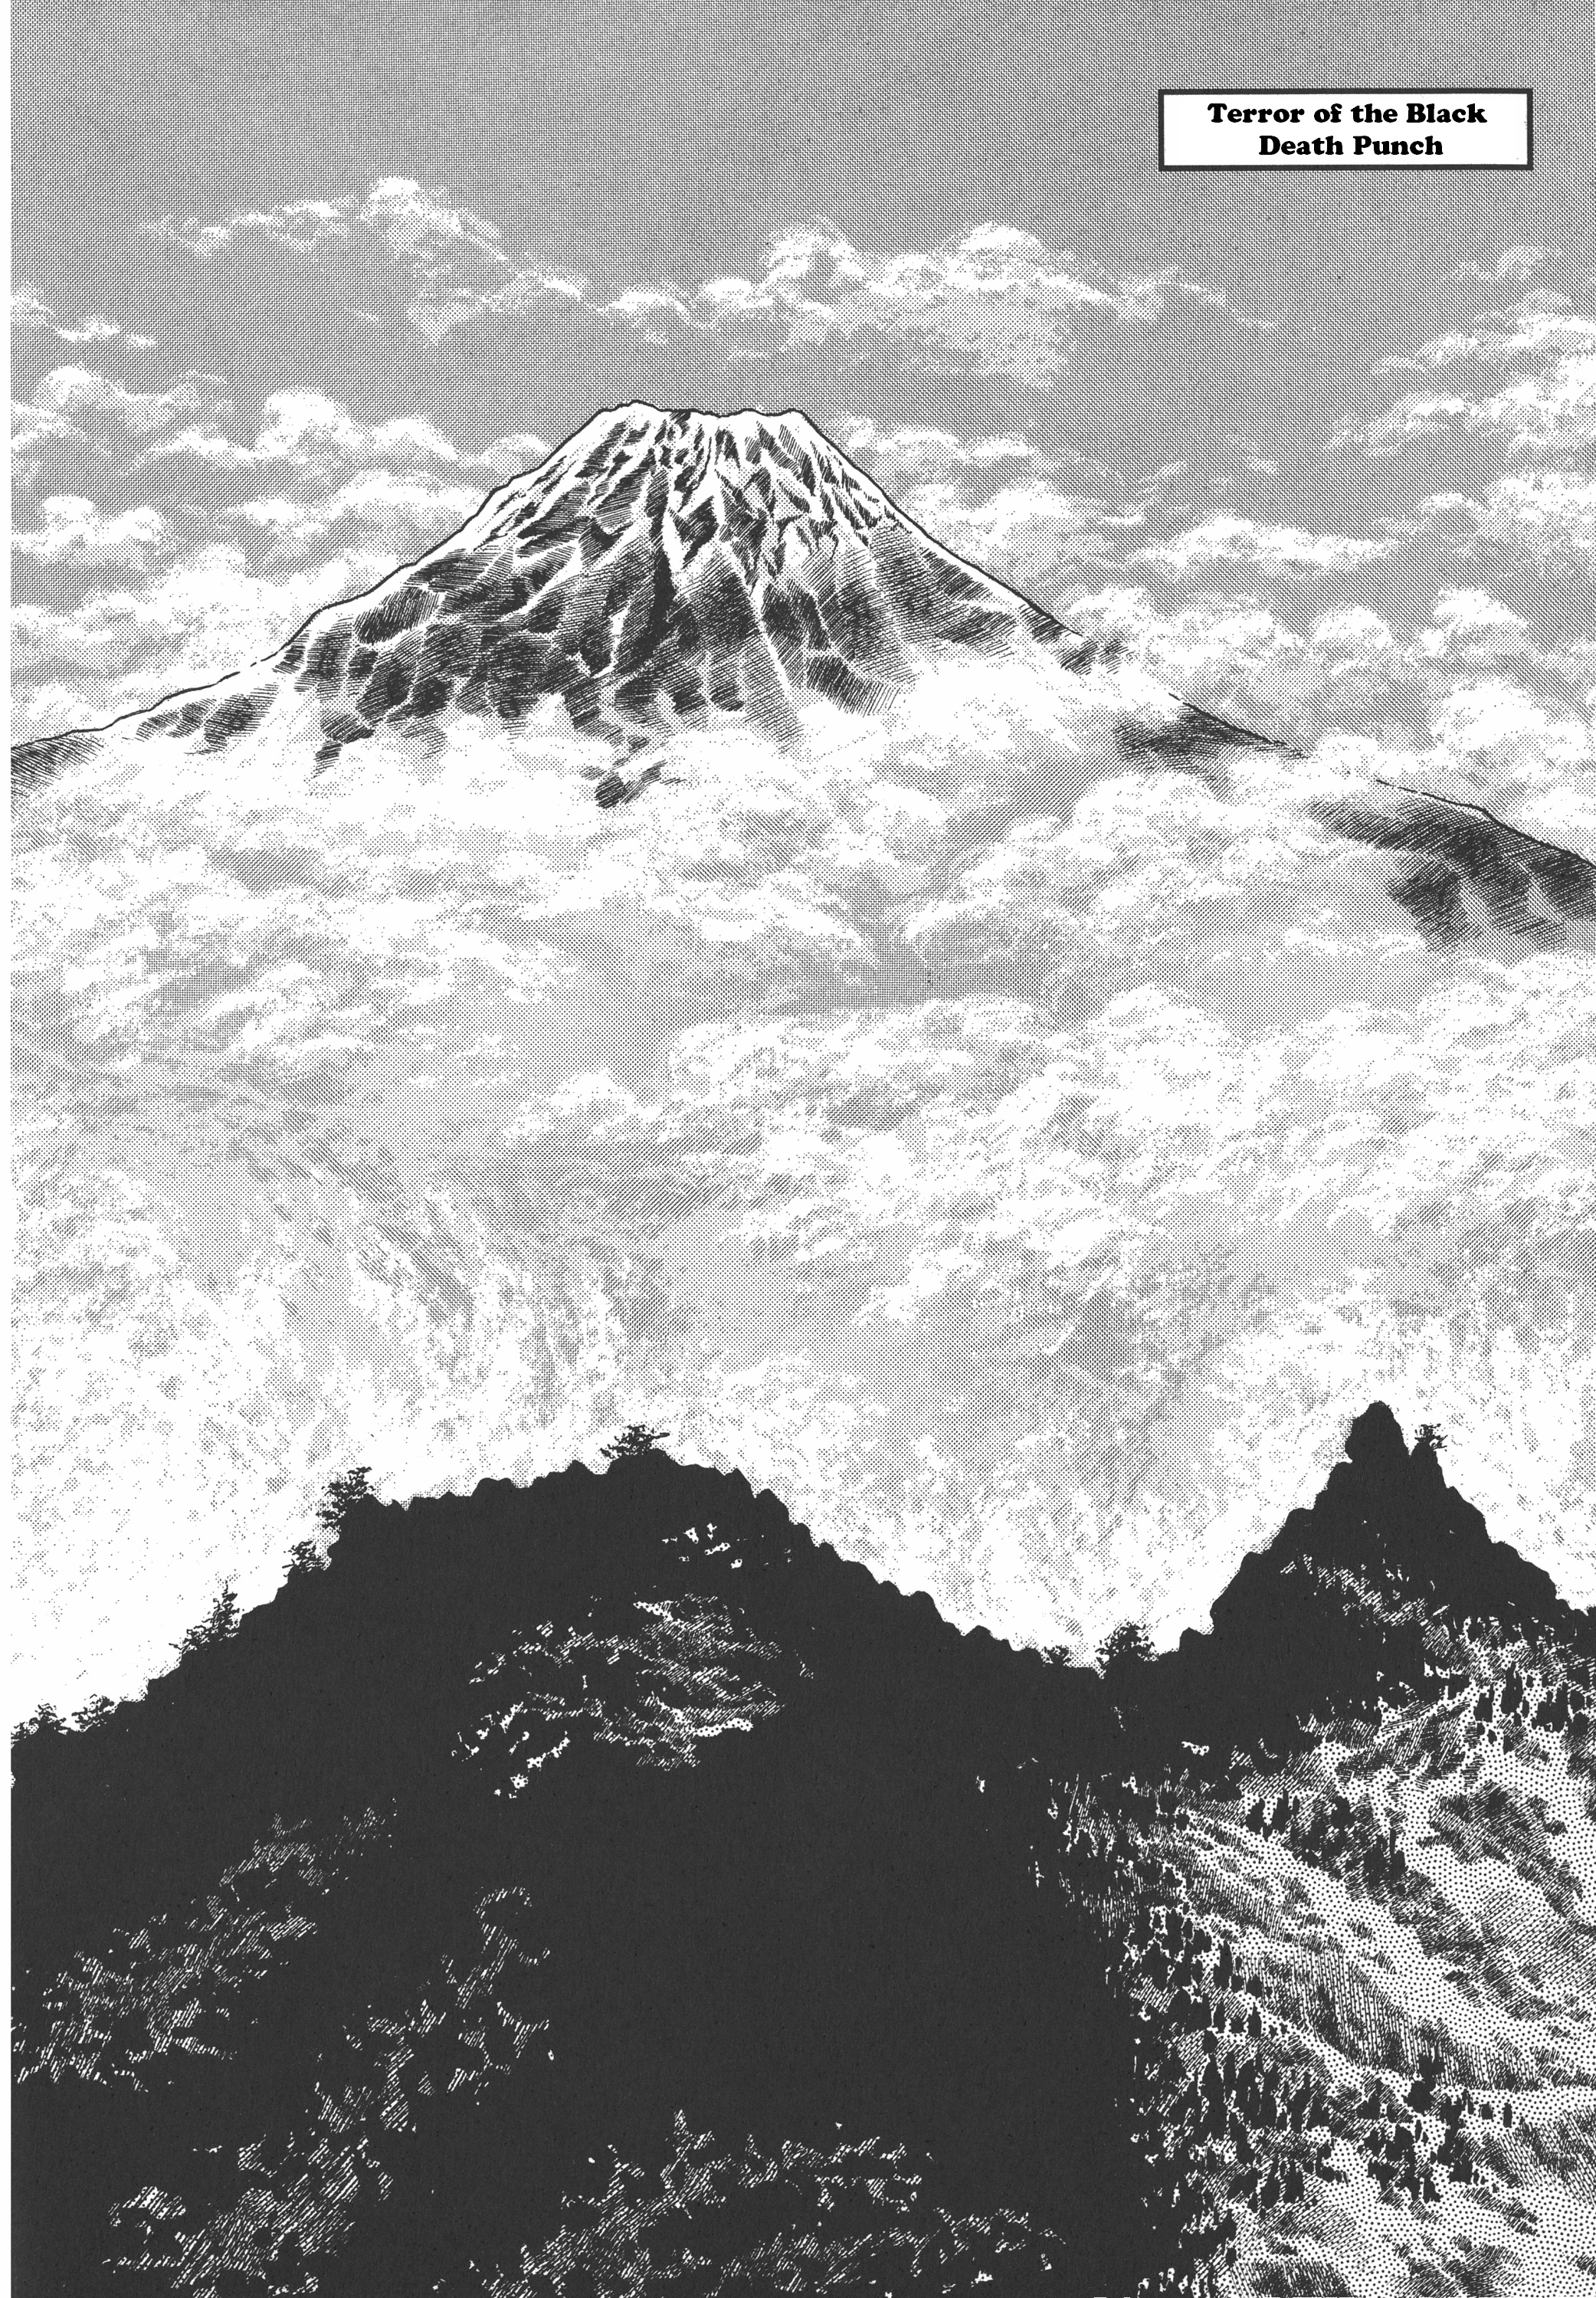 Saint Seiya (Kanzenban Edition) - Page 1